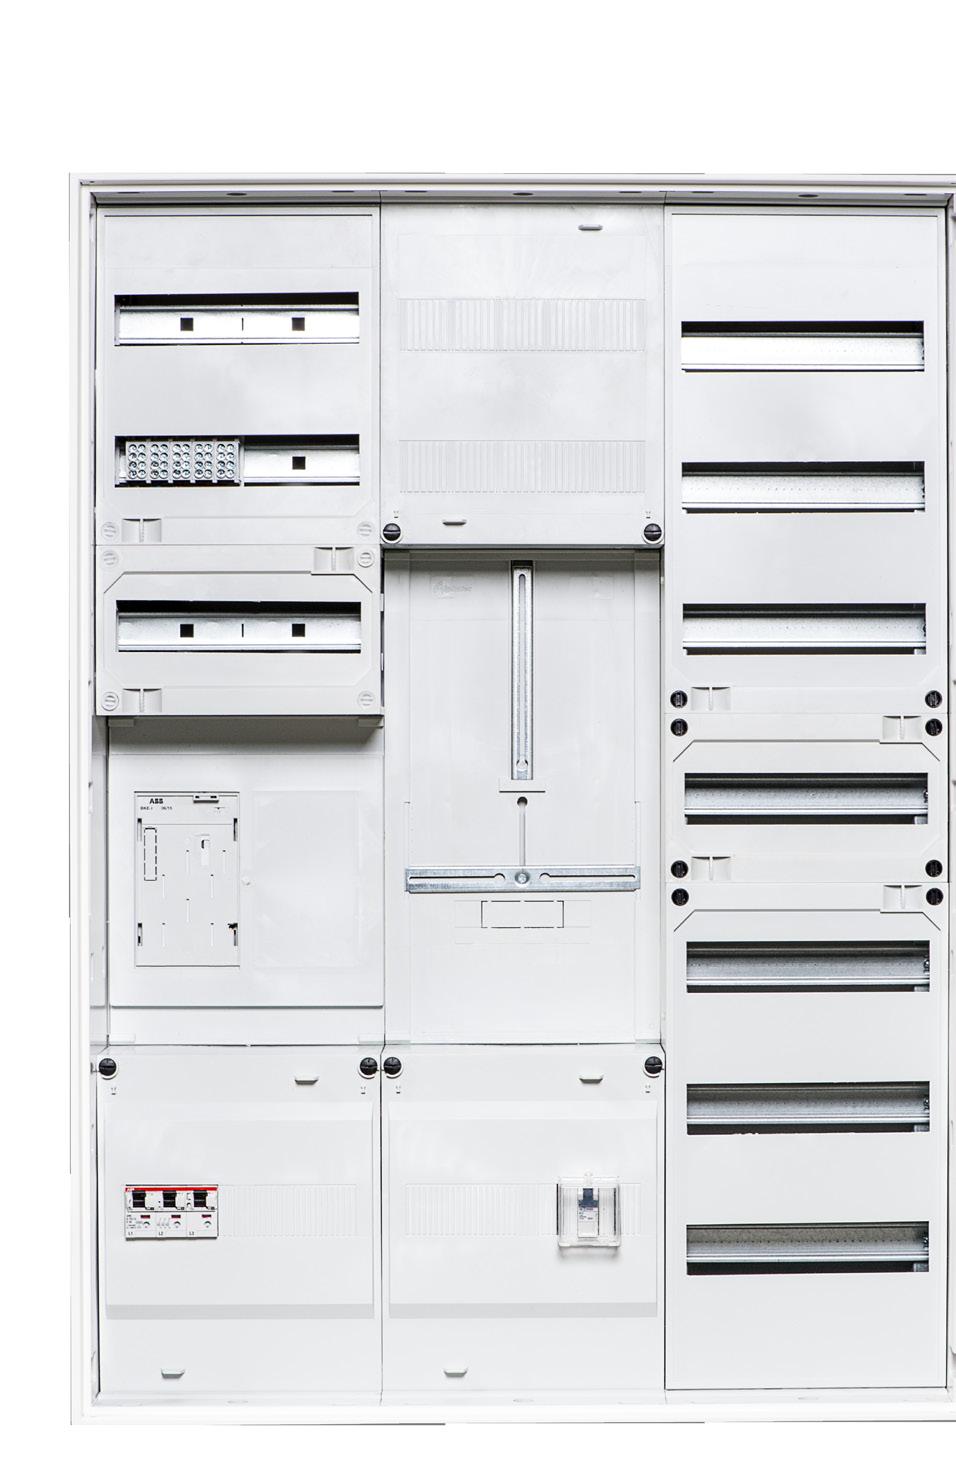 Die VDE-AR-N 4101:2015 Die VDE-Anwendungsregel 4101 beschreibt den Anschluss der Zählerplätze an das Hauptstromversorgungssystem sowie die Betriebs- und Umgebungstemperaturen.